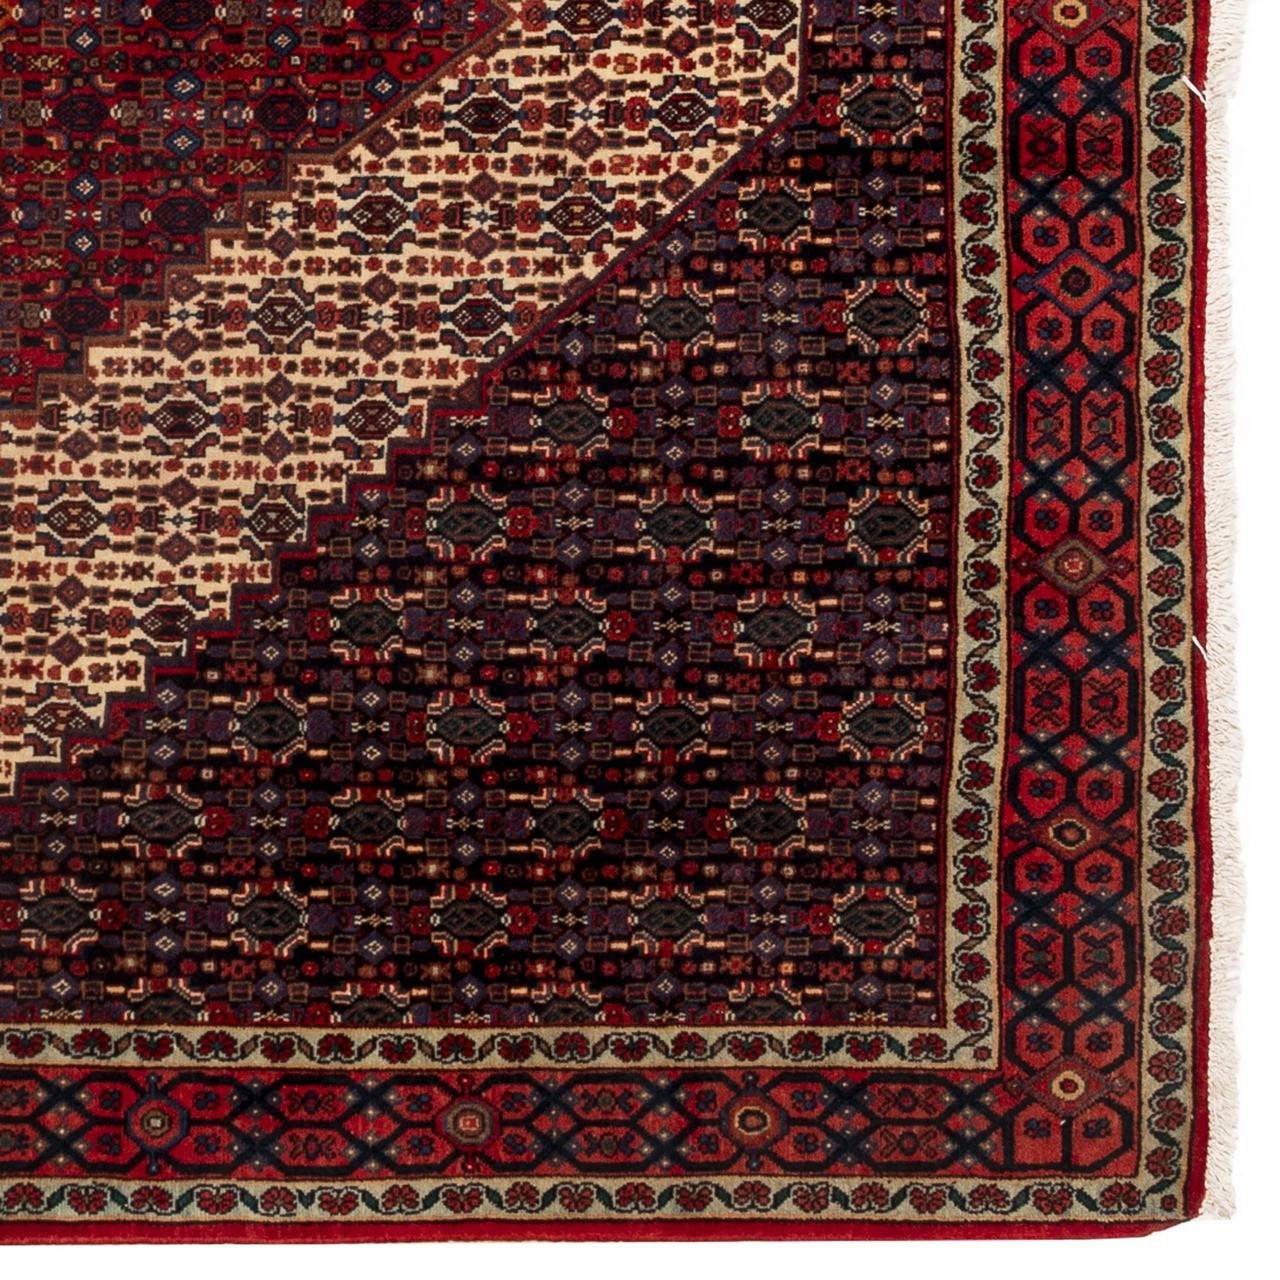 فرش دستباف قدیمی شش متری سنندج کد 123228